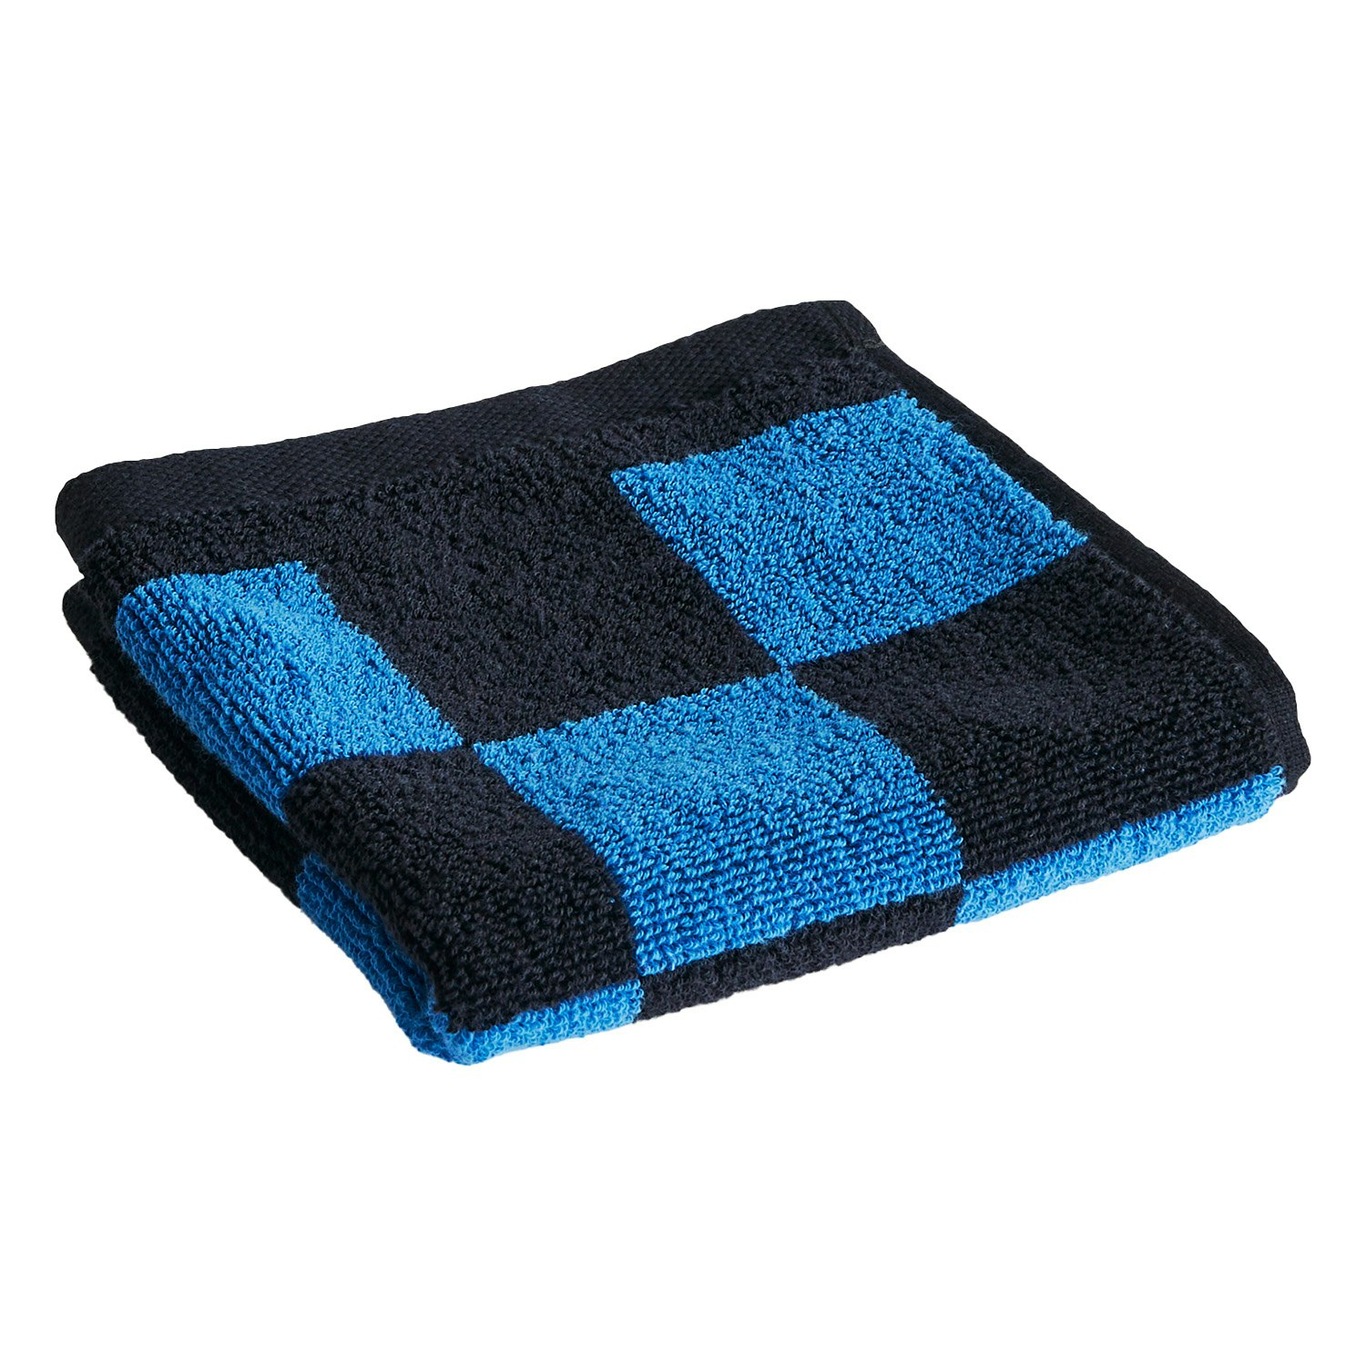 https://royaldesign.com/image/11/hay-check-wash-cloth-cobalt-blue-0?w=800&quality=80